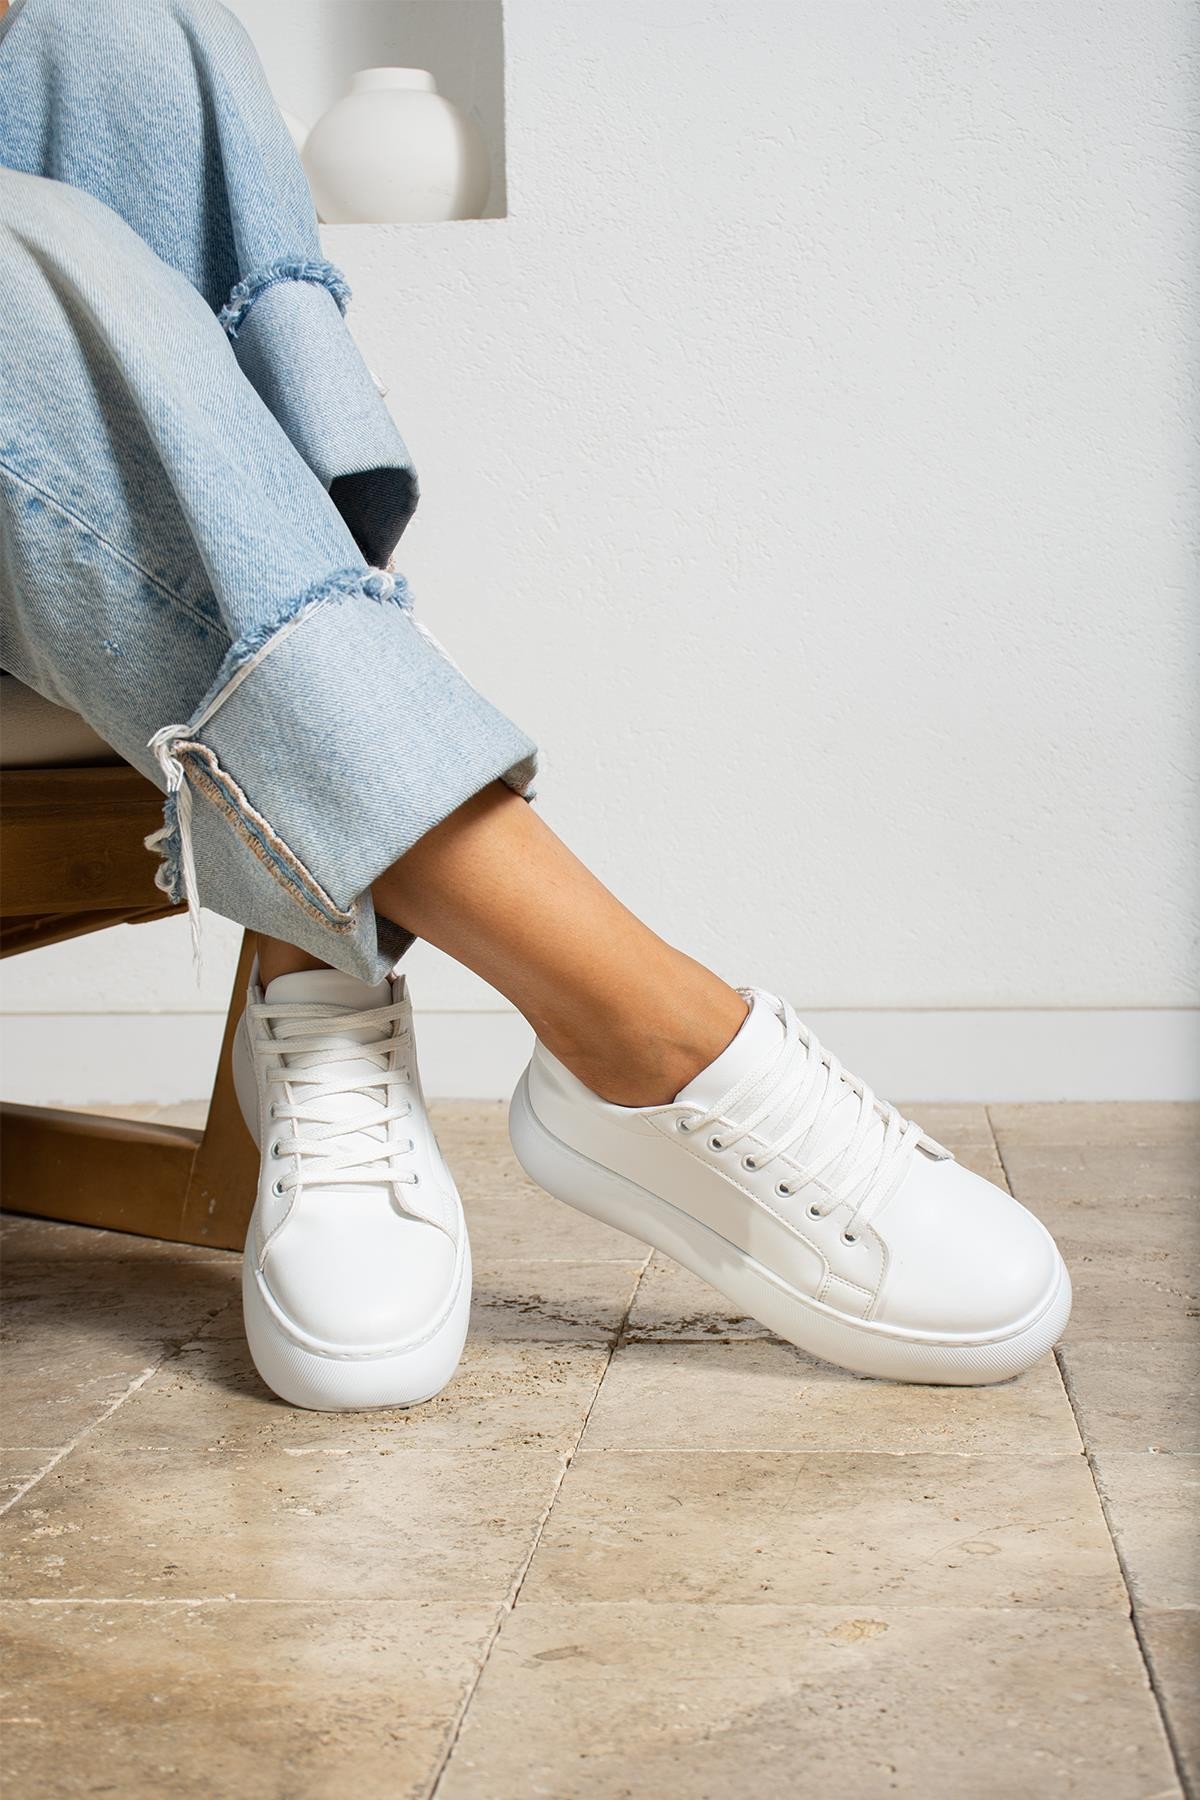 Candy Kadın Sneaker Bağcıklı ayakkabı - beyaz